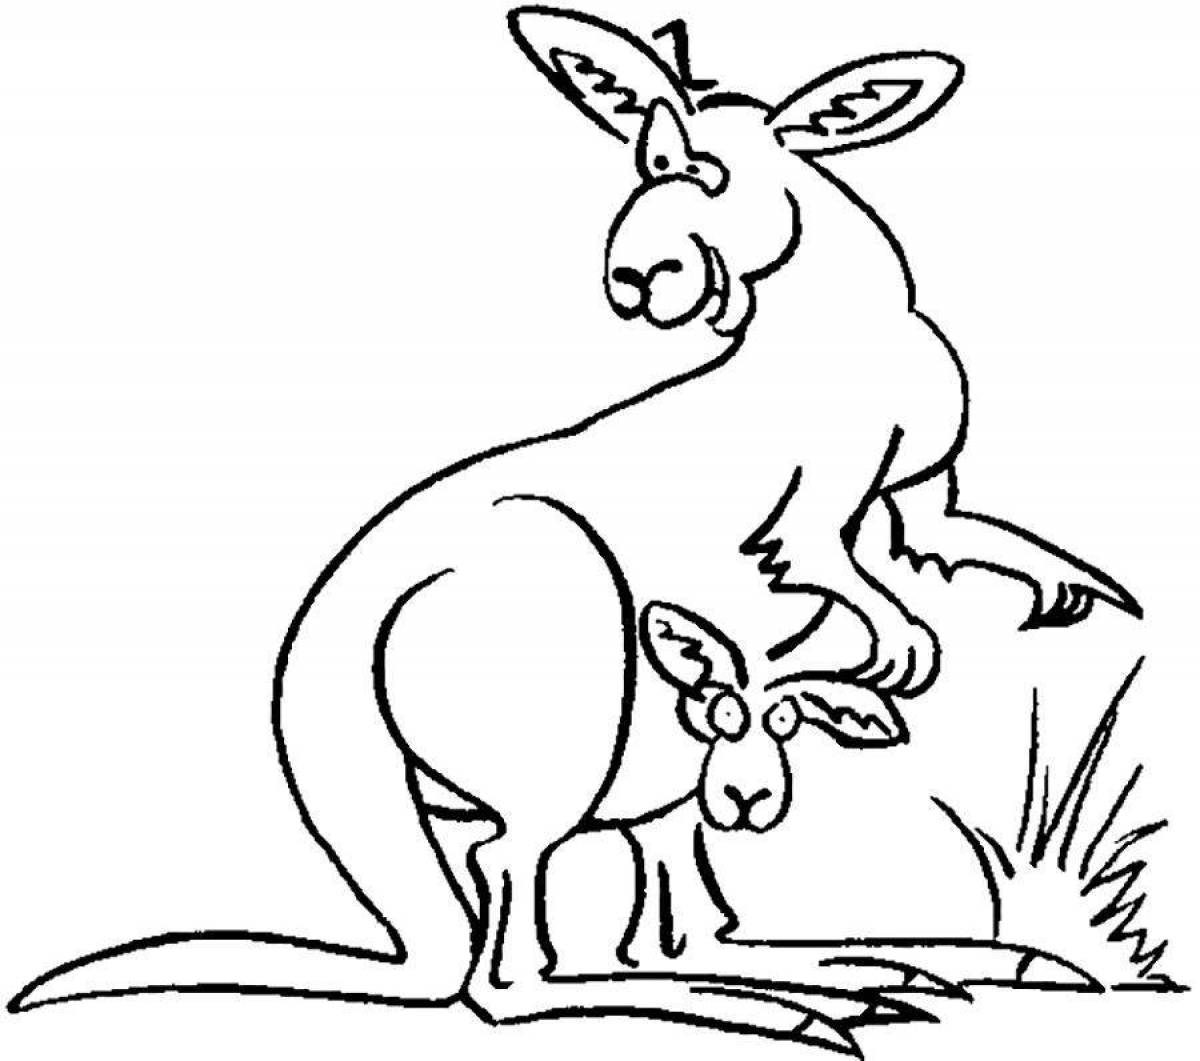 Playful kangaroo coloring page for kids